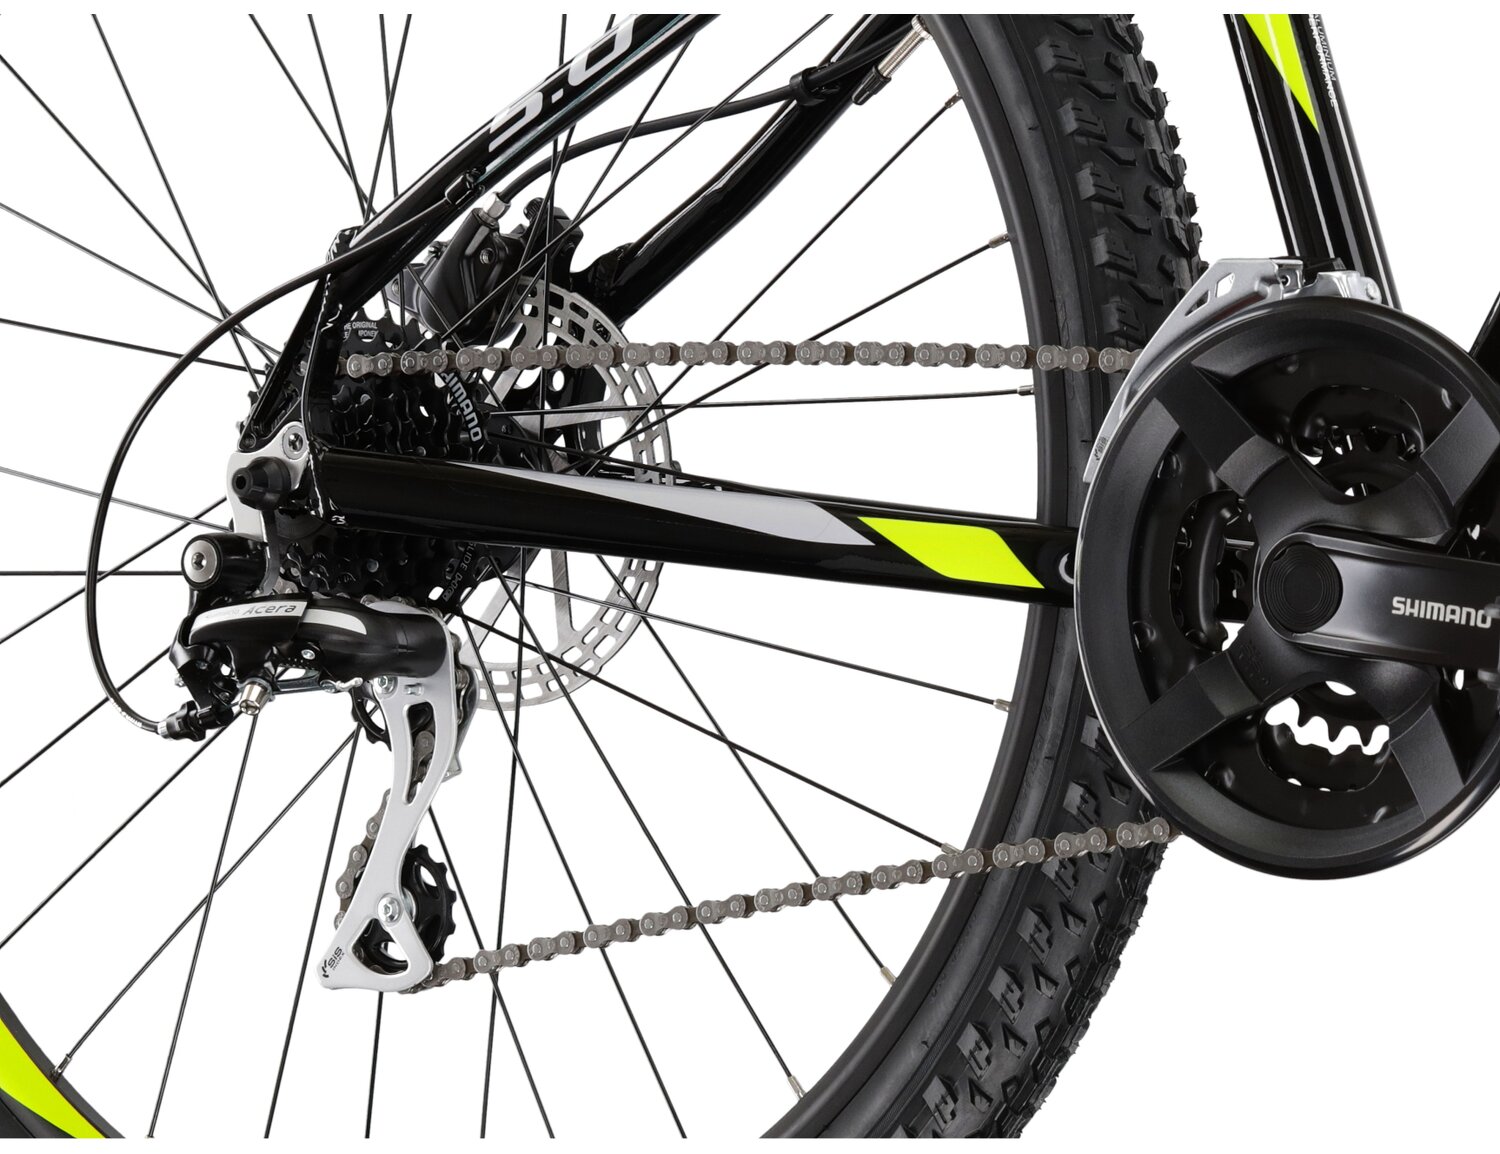  Tylna ośmiobiegowa przerzutka Shimano Acera RD M3020 oraz hydrauliczne hamulce tarczowe Shimano MT200 w rowerze górskim MTB KROSS Hexagon 5.0 